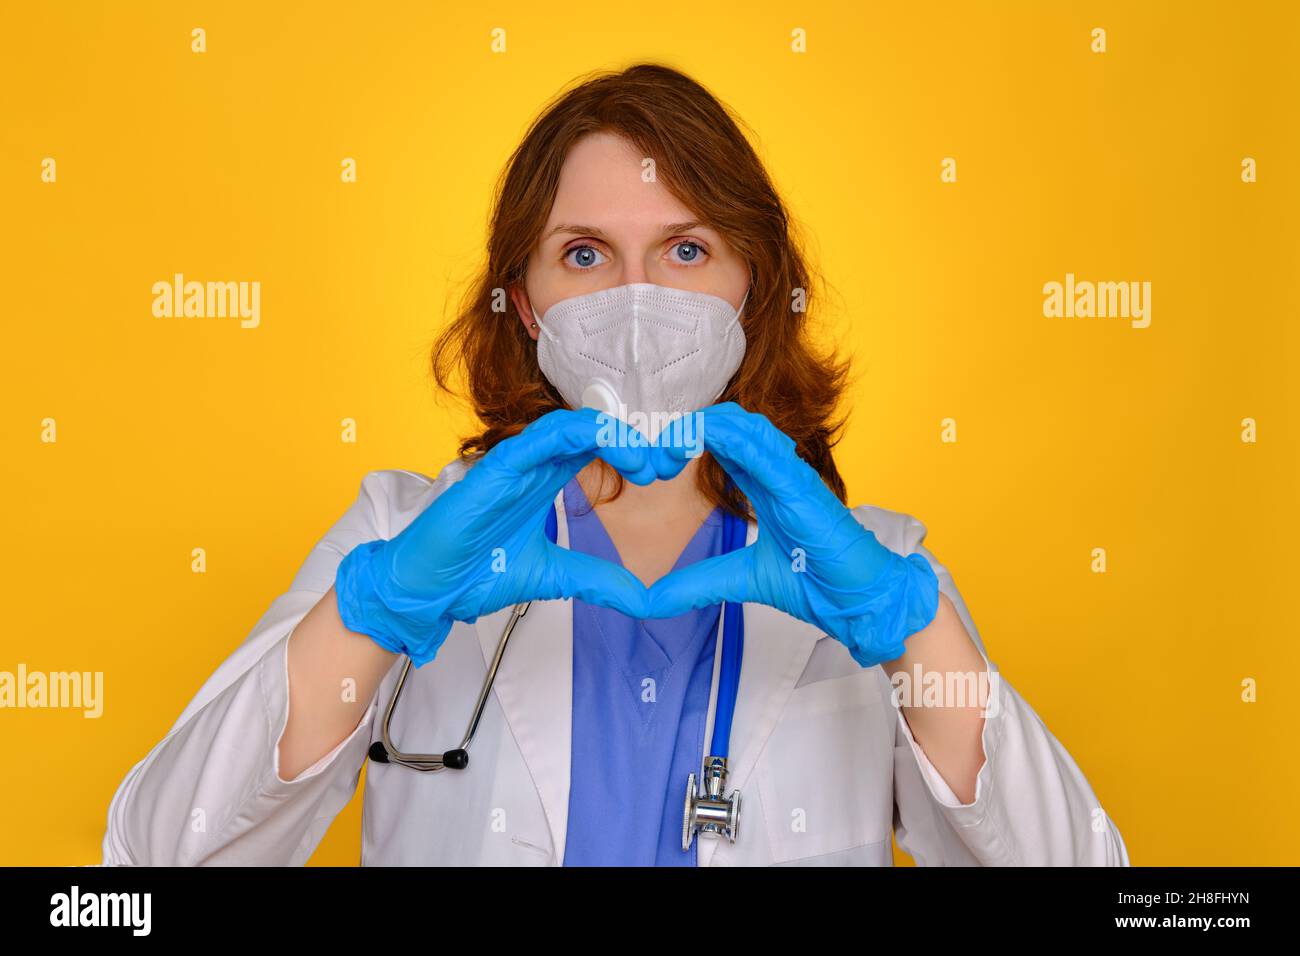 Le médecin montre un signe de coeur dans les gants de protection, gros plan.Mains d'un médic dans un uniforme avec un signe d'amour pour les patients atteints de coronavirus, concept Banque D'Images